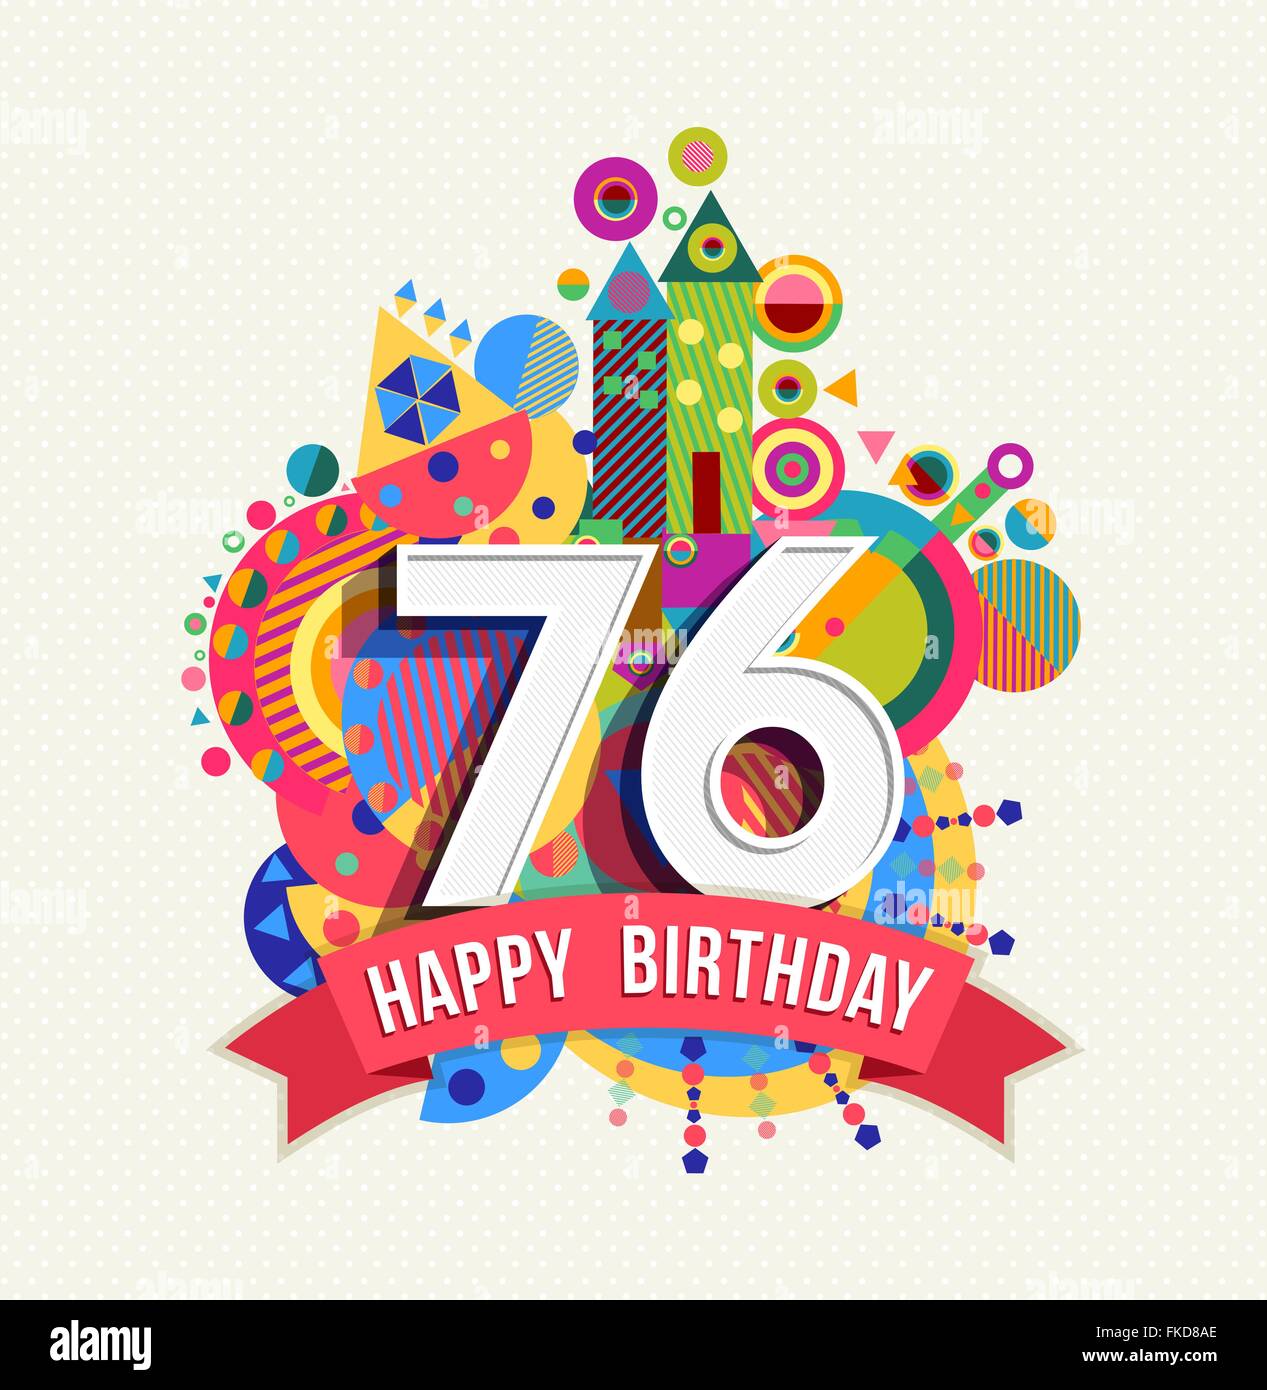 Joyeux anniversaire 76 ans 76, fun anniversaire carte postale avec des étiquettes de texte, nombre et géométrie colorée Illustration de Vecteur